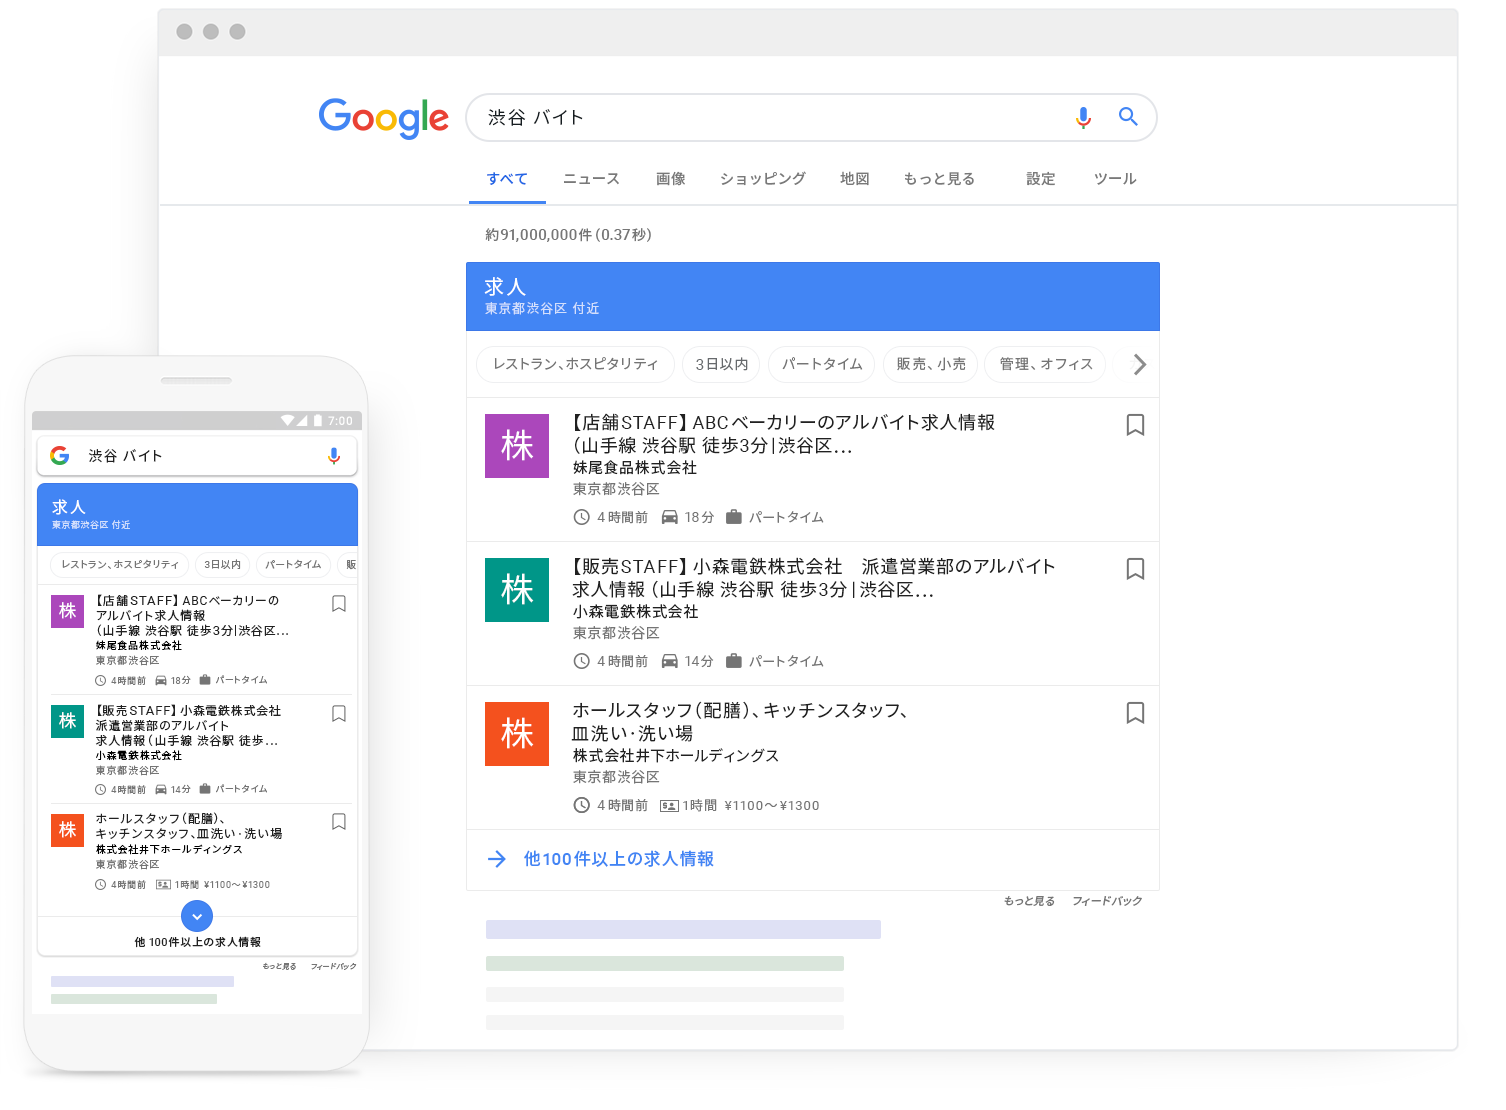 Googleしごと検索サービス開始！求人情報検索が日本国内でも可能に！構造化データ作成で採用情報をクロール、検索結果へ表示が可能。グーグル新機能アップデート最新情報2019